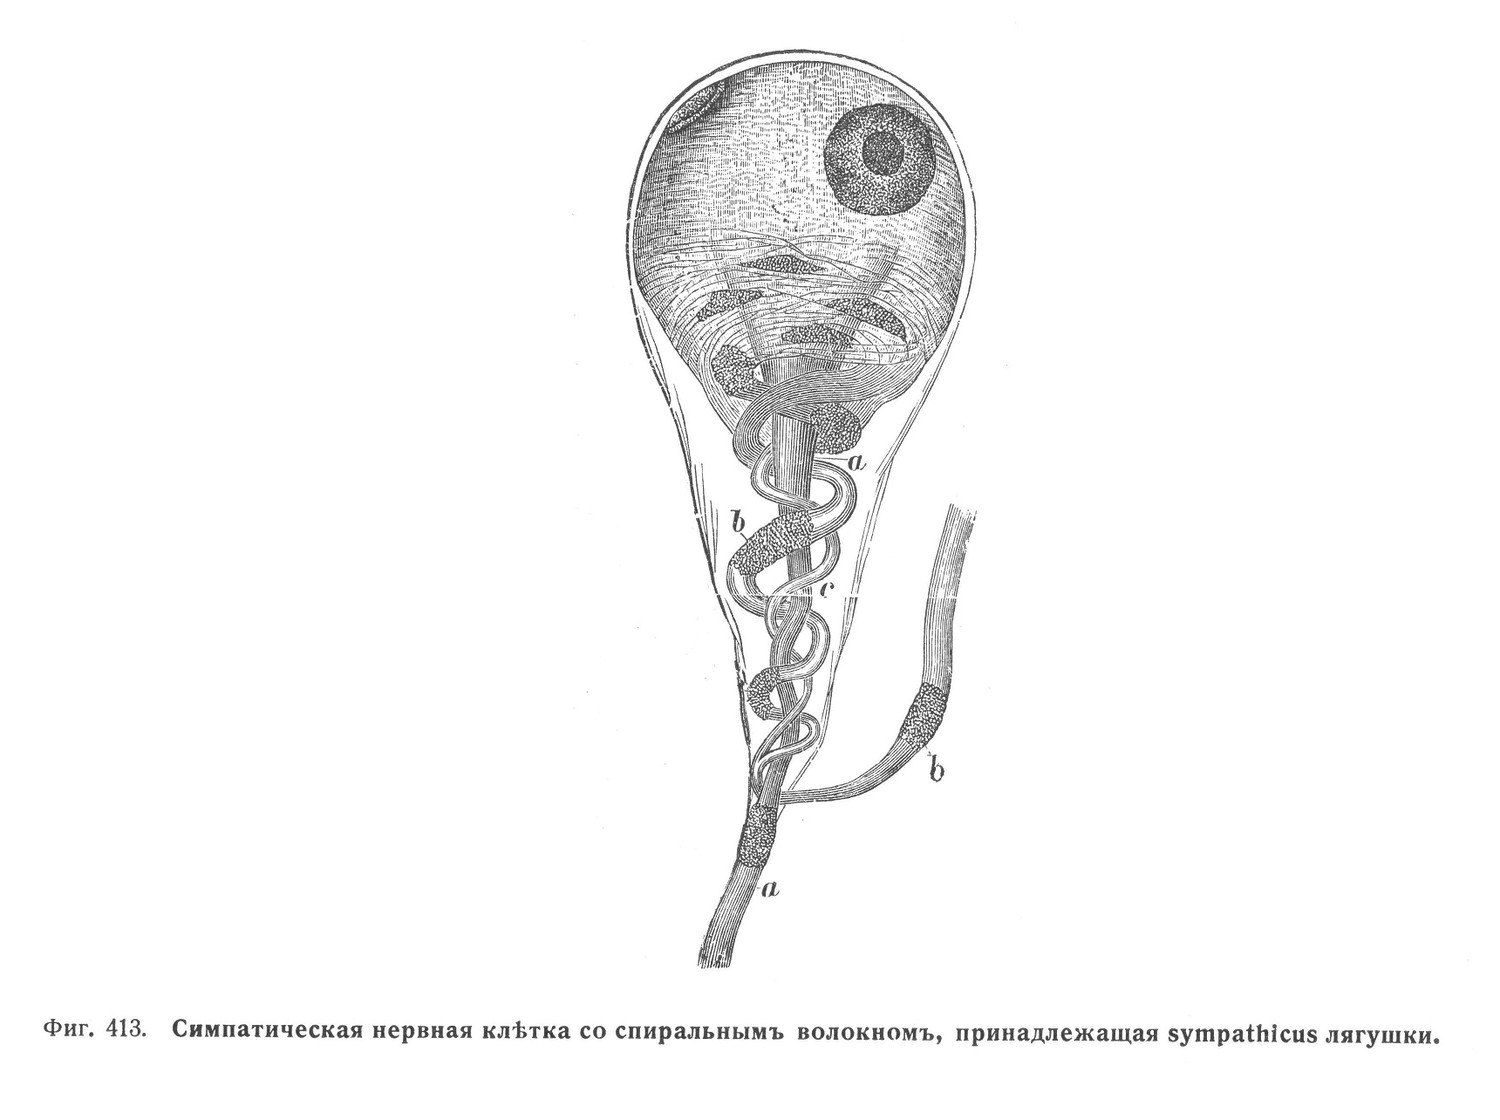 Симпатическая нервная клѣтка со спиральнымъ волокномъ, принадлежащая sympathicus лягушки